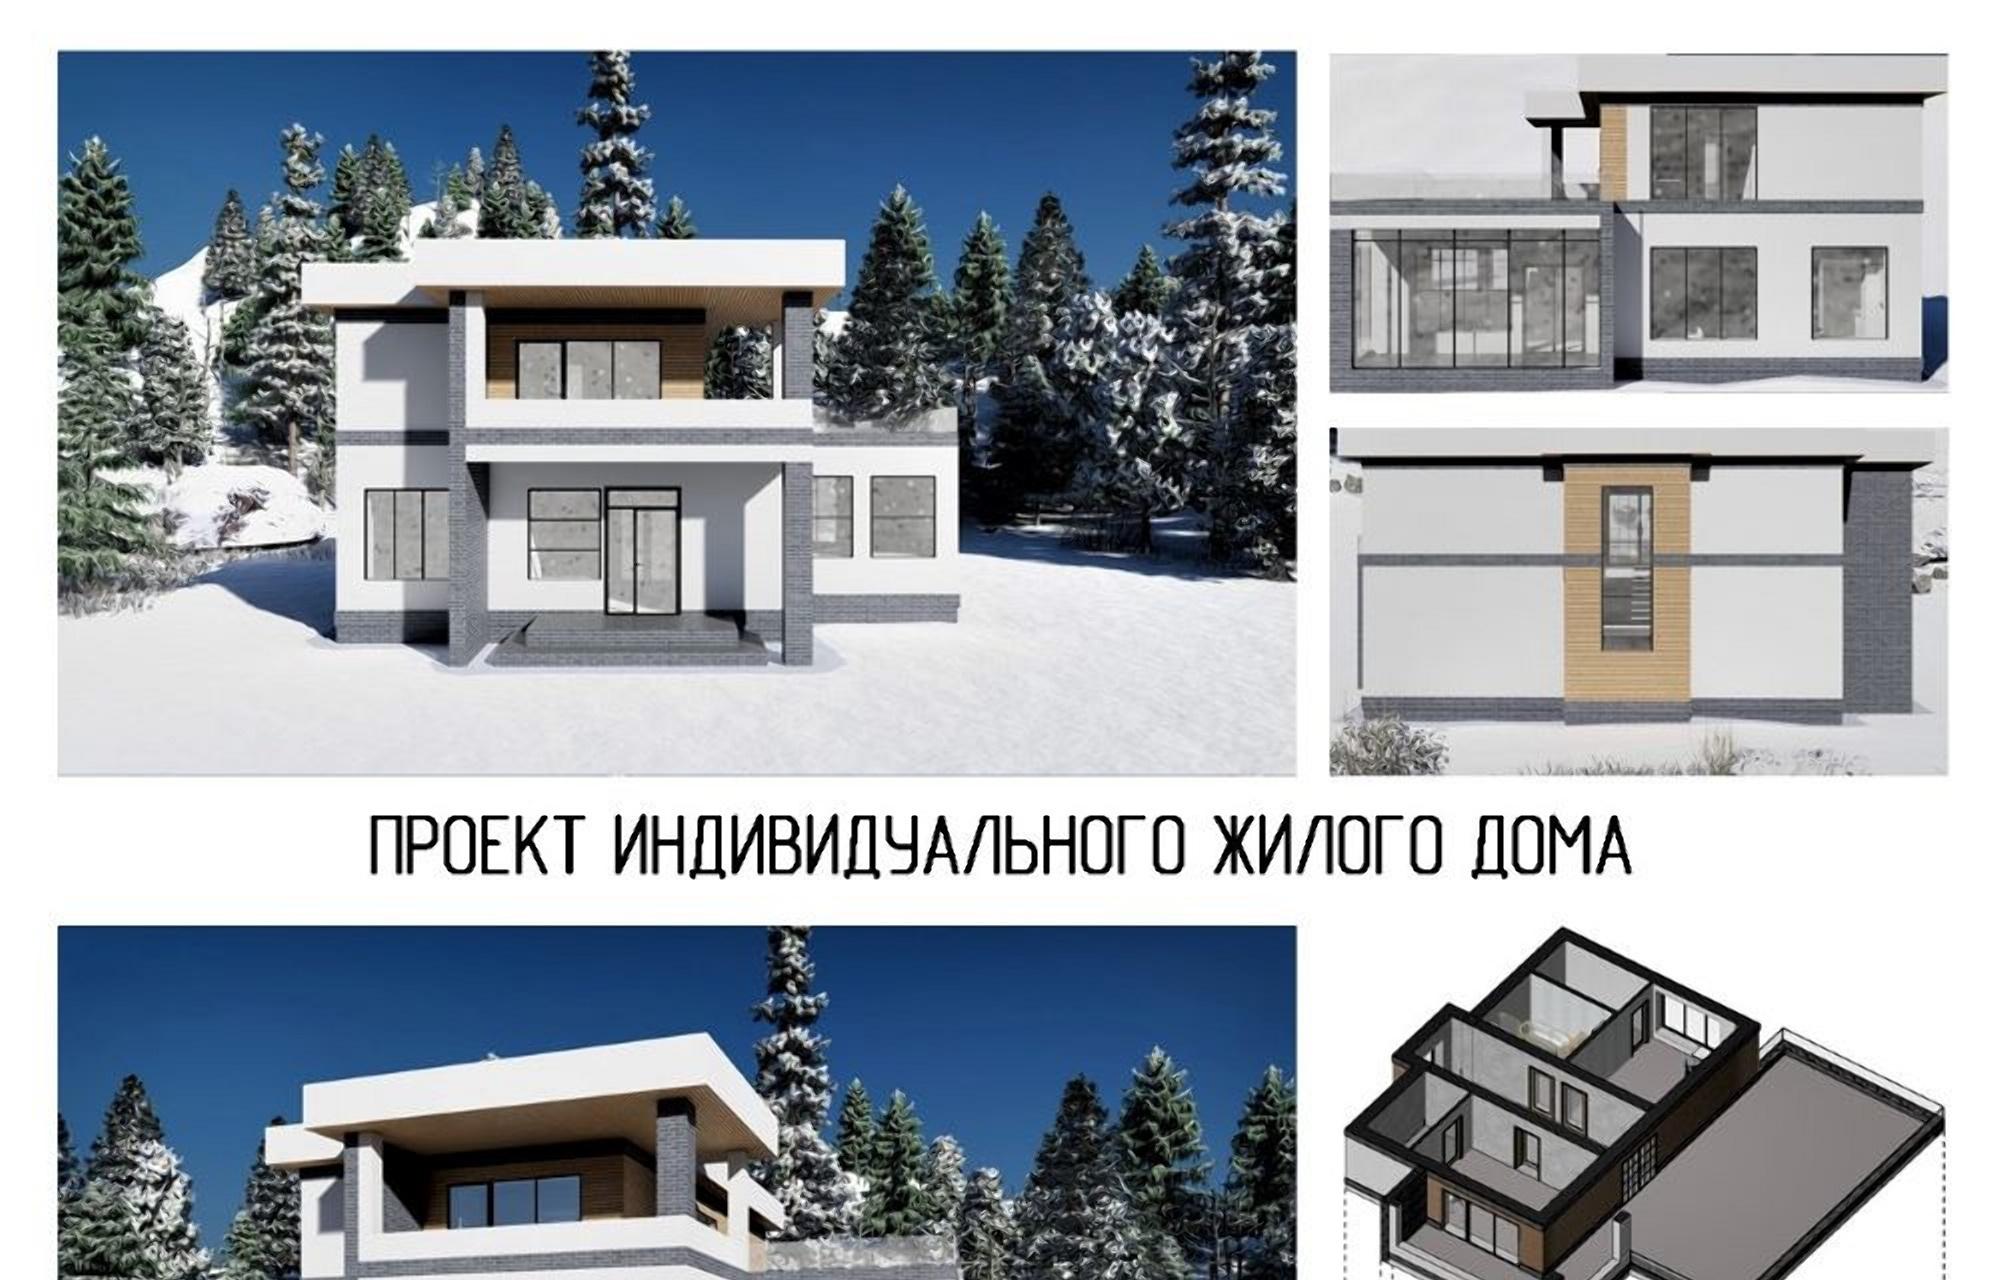 Студент ТвГТУ представил BIM-проект жилого дома на международном конкурсе - новости Афанасий